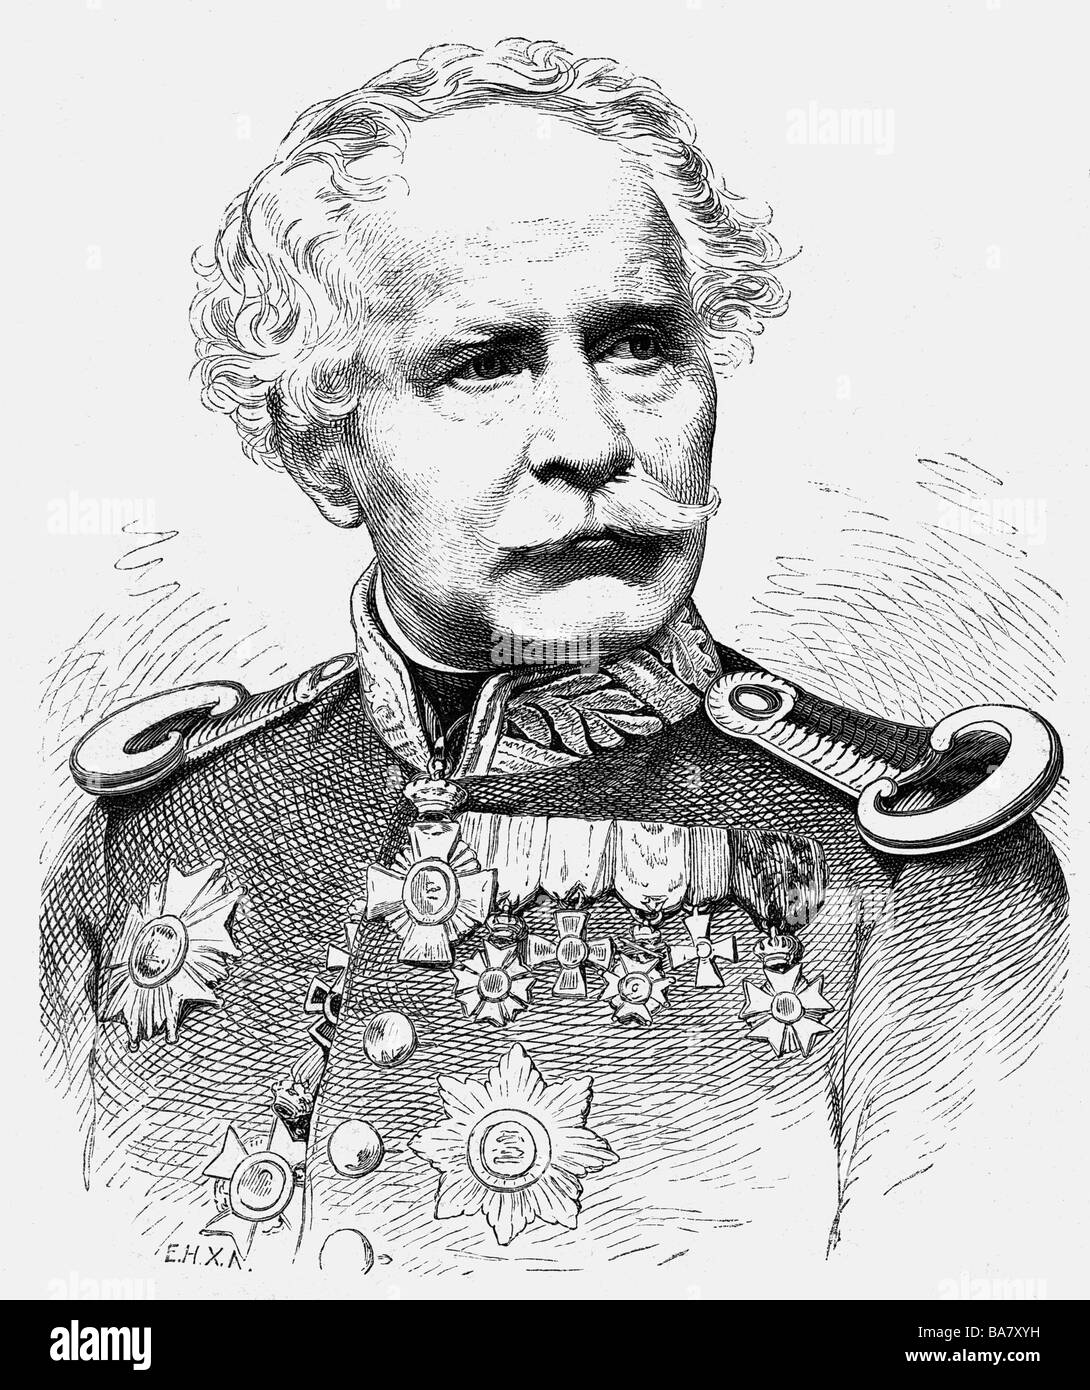 Hartmann, Jakob Freiherr von, 4.2.1795 - 23.2.1873, generale bavarese, comandante generale del II corpo dell'esercito bavarese 1870 - 1871, ritratto, incisione in legno, 19th secolo, , Foto Stock